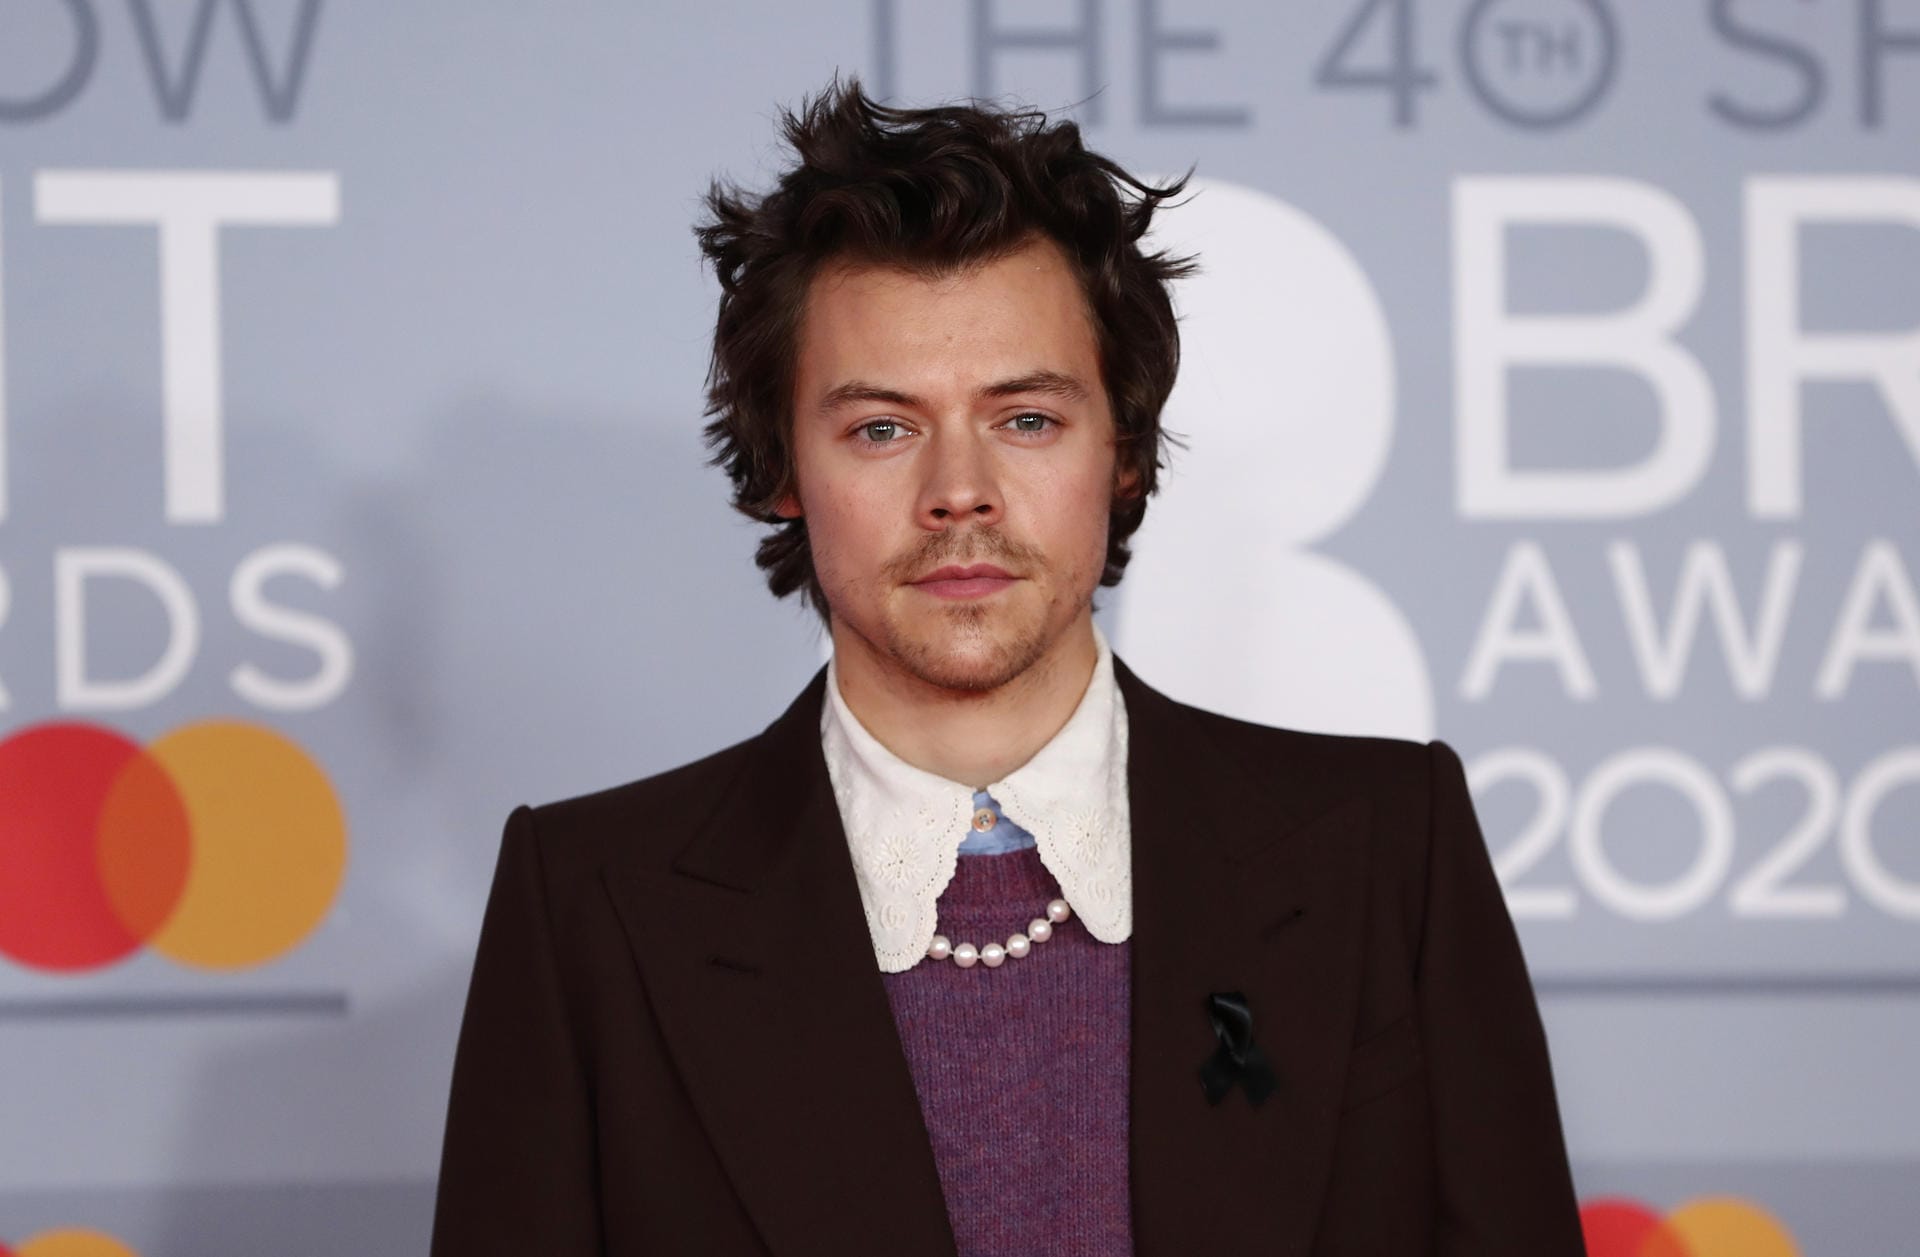 Brit Awards: Harry Styles zeigte sich mit Perlenkette und Kragen.